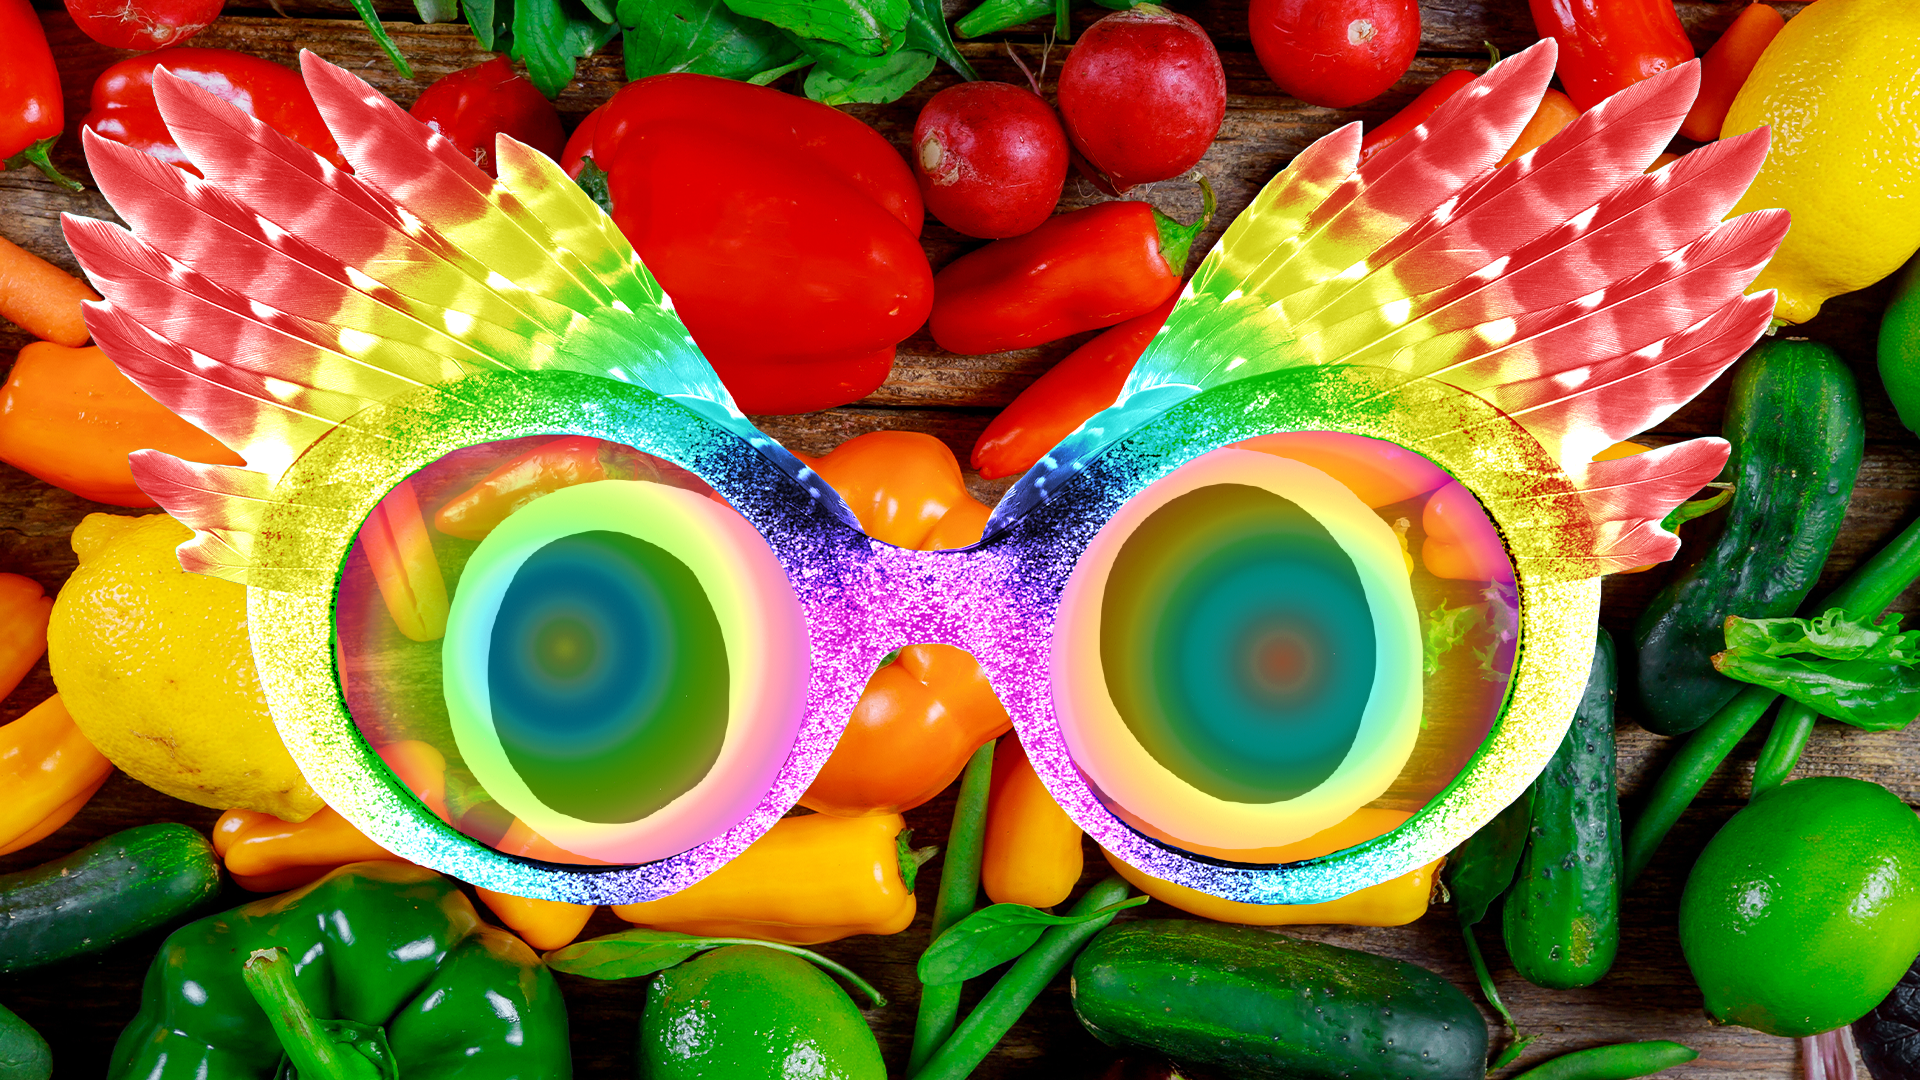 Luna's glasses on a vegetable background